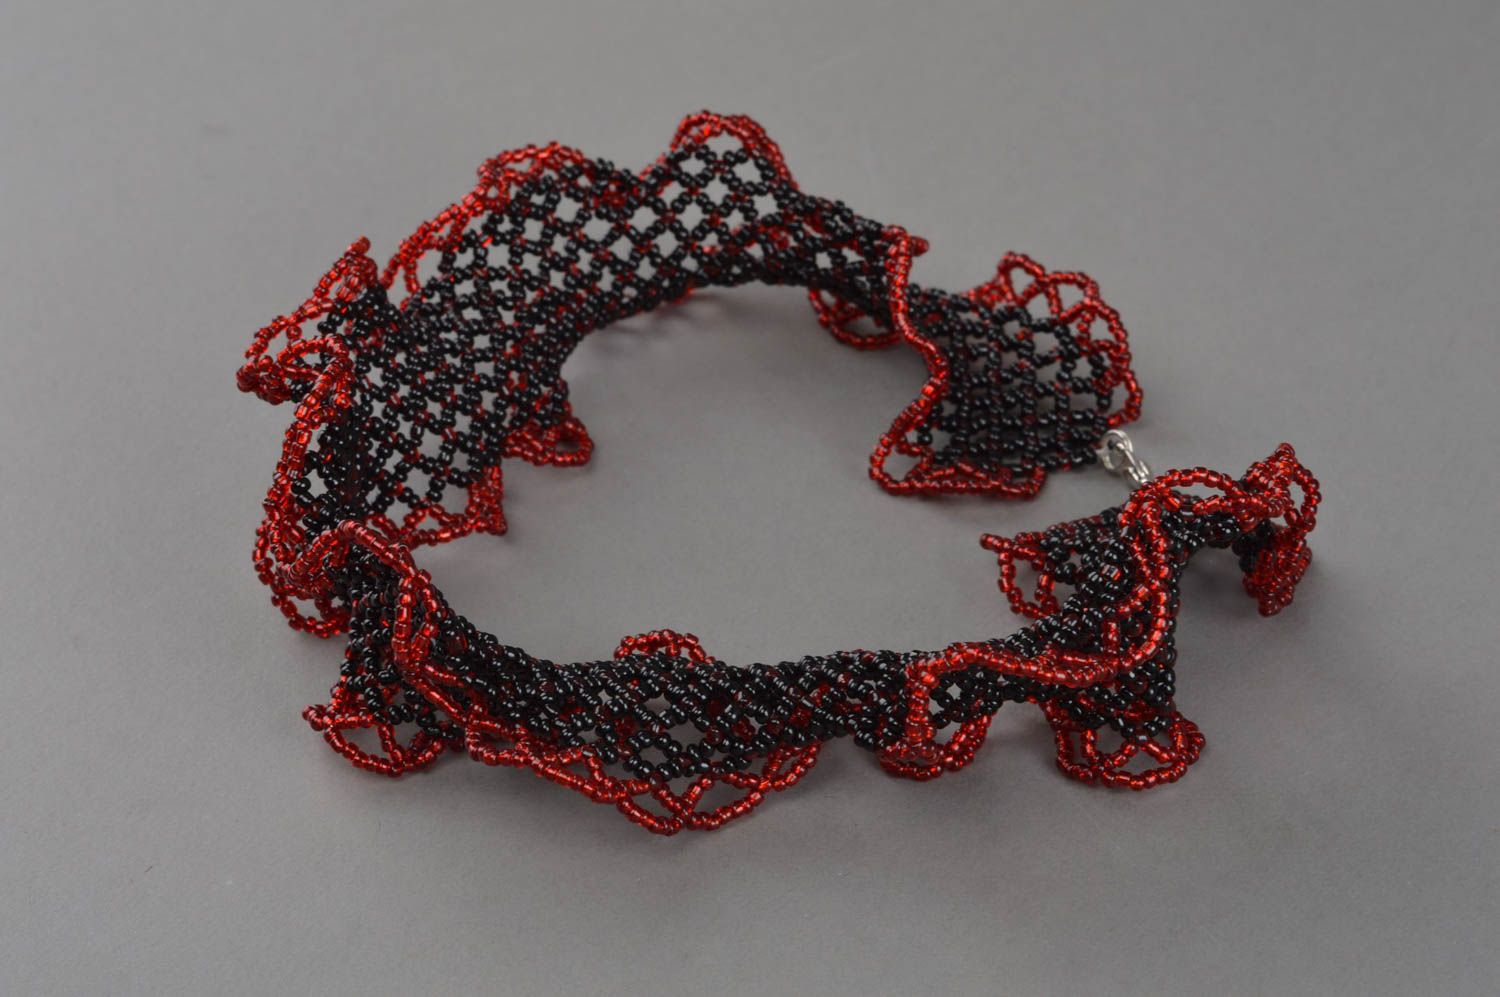 Ожерелье из бисера необычного дизайна черное красивое ручной работы хэнд мейд фото 3